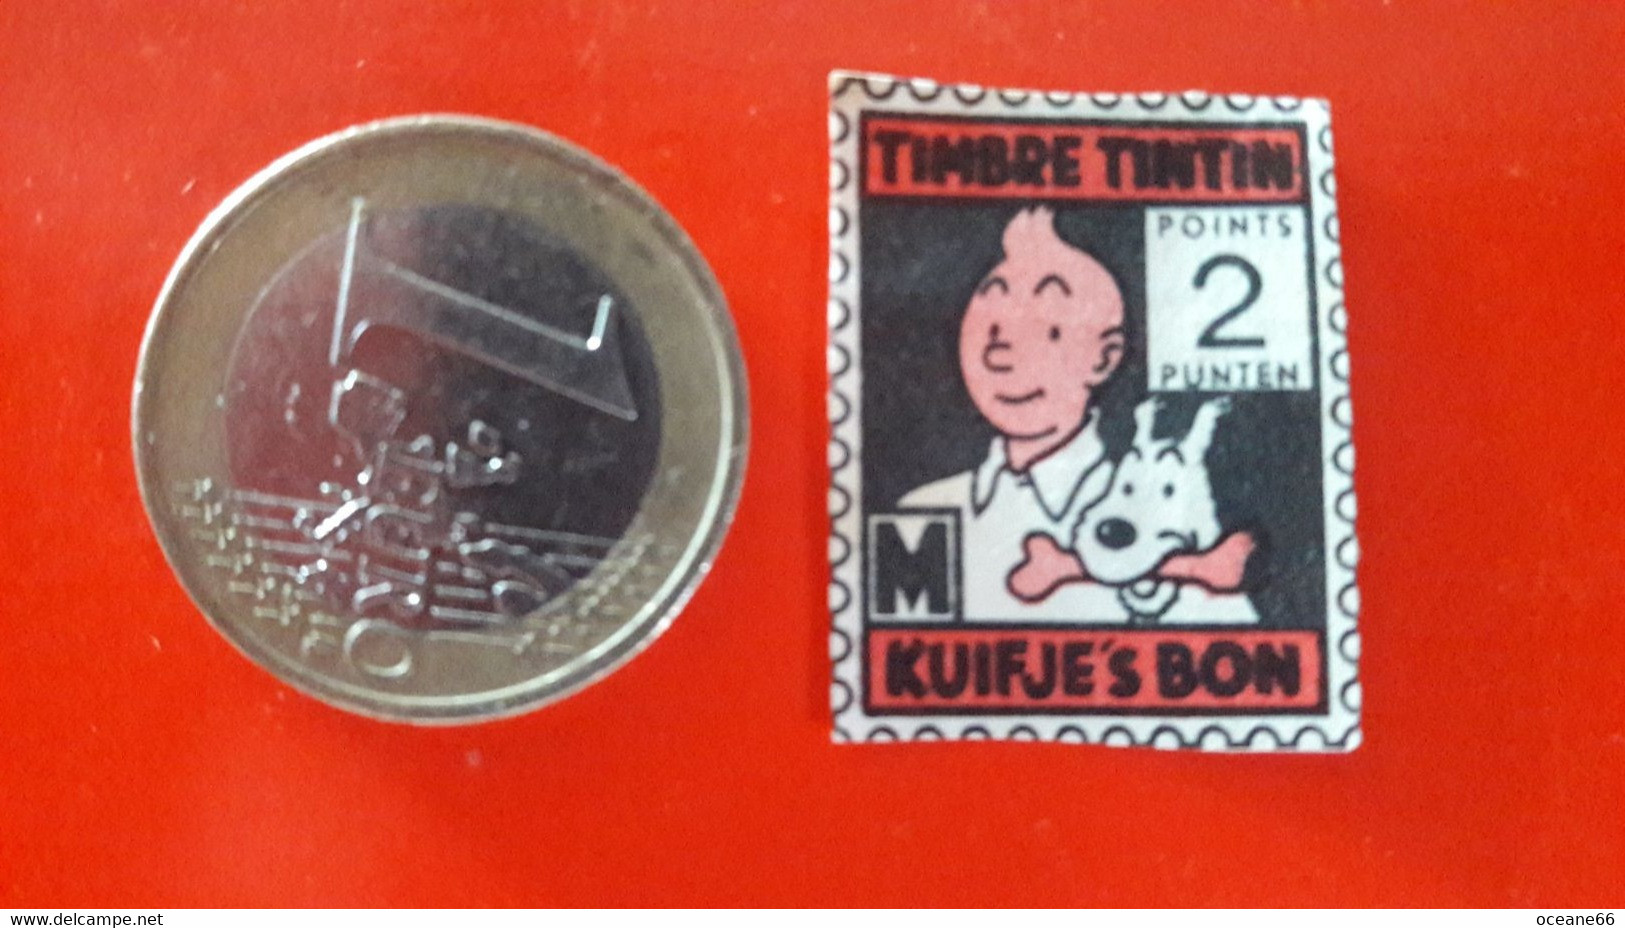 Chromo Timbre Tintin Kuifje's Bon 2 Points - Chromo's